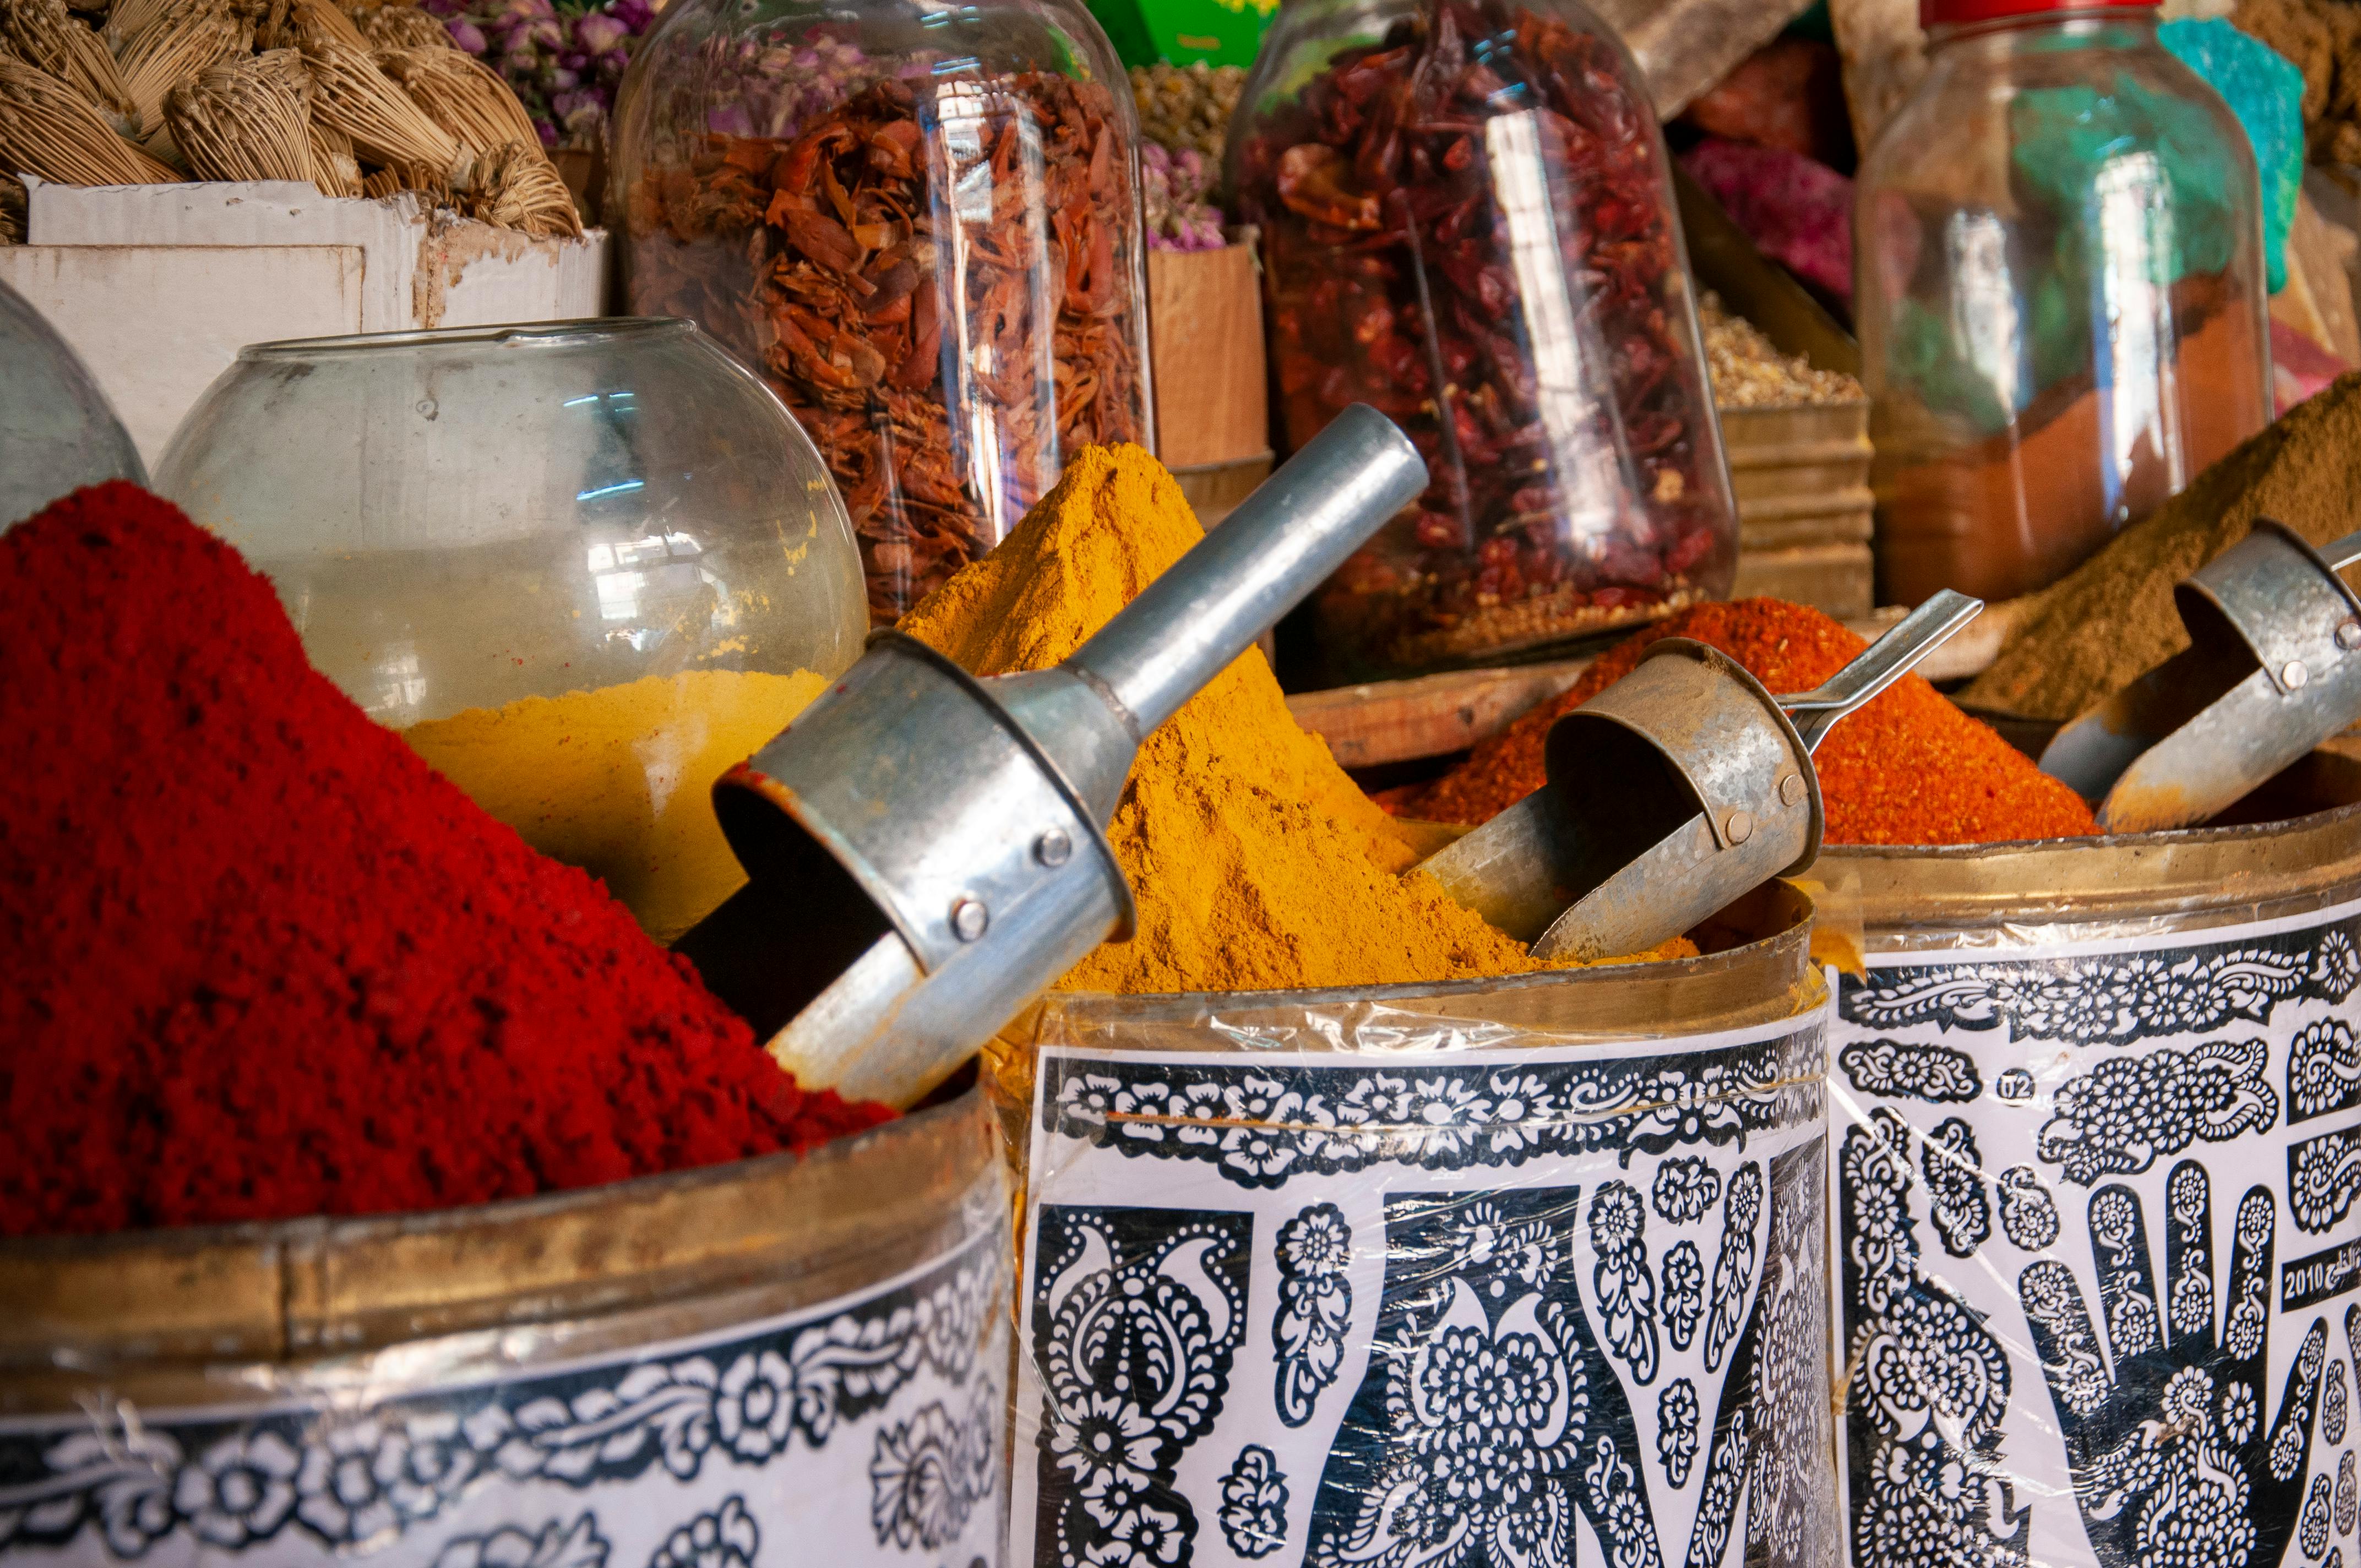 Saffron: The Precious Spice Of India